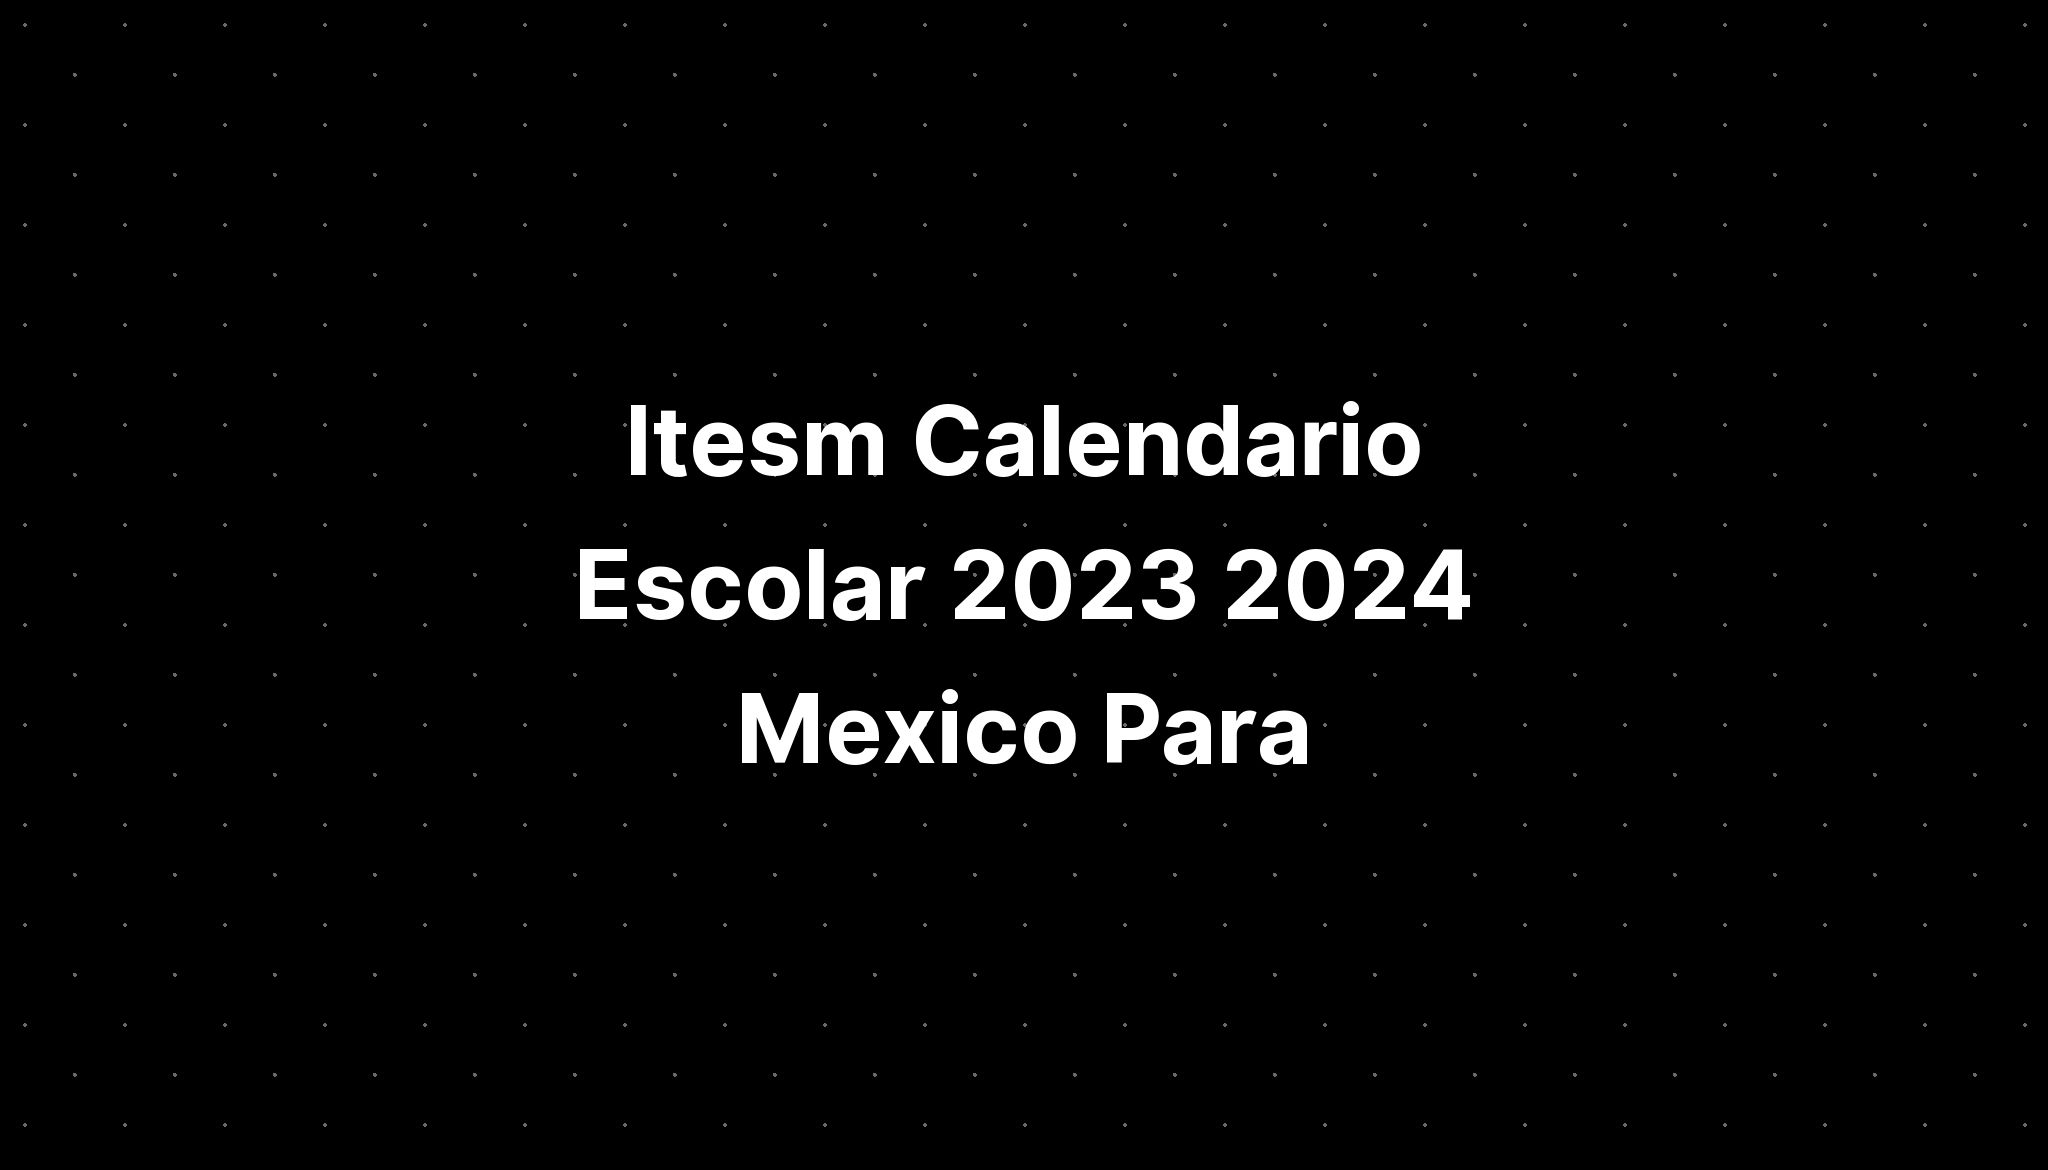 Itesm Calendario Escolar 2023 2024 Mexico Para Cristo IMAGESEE